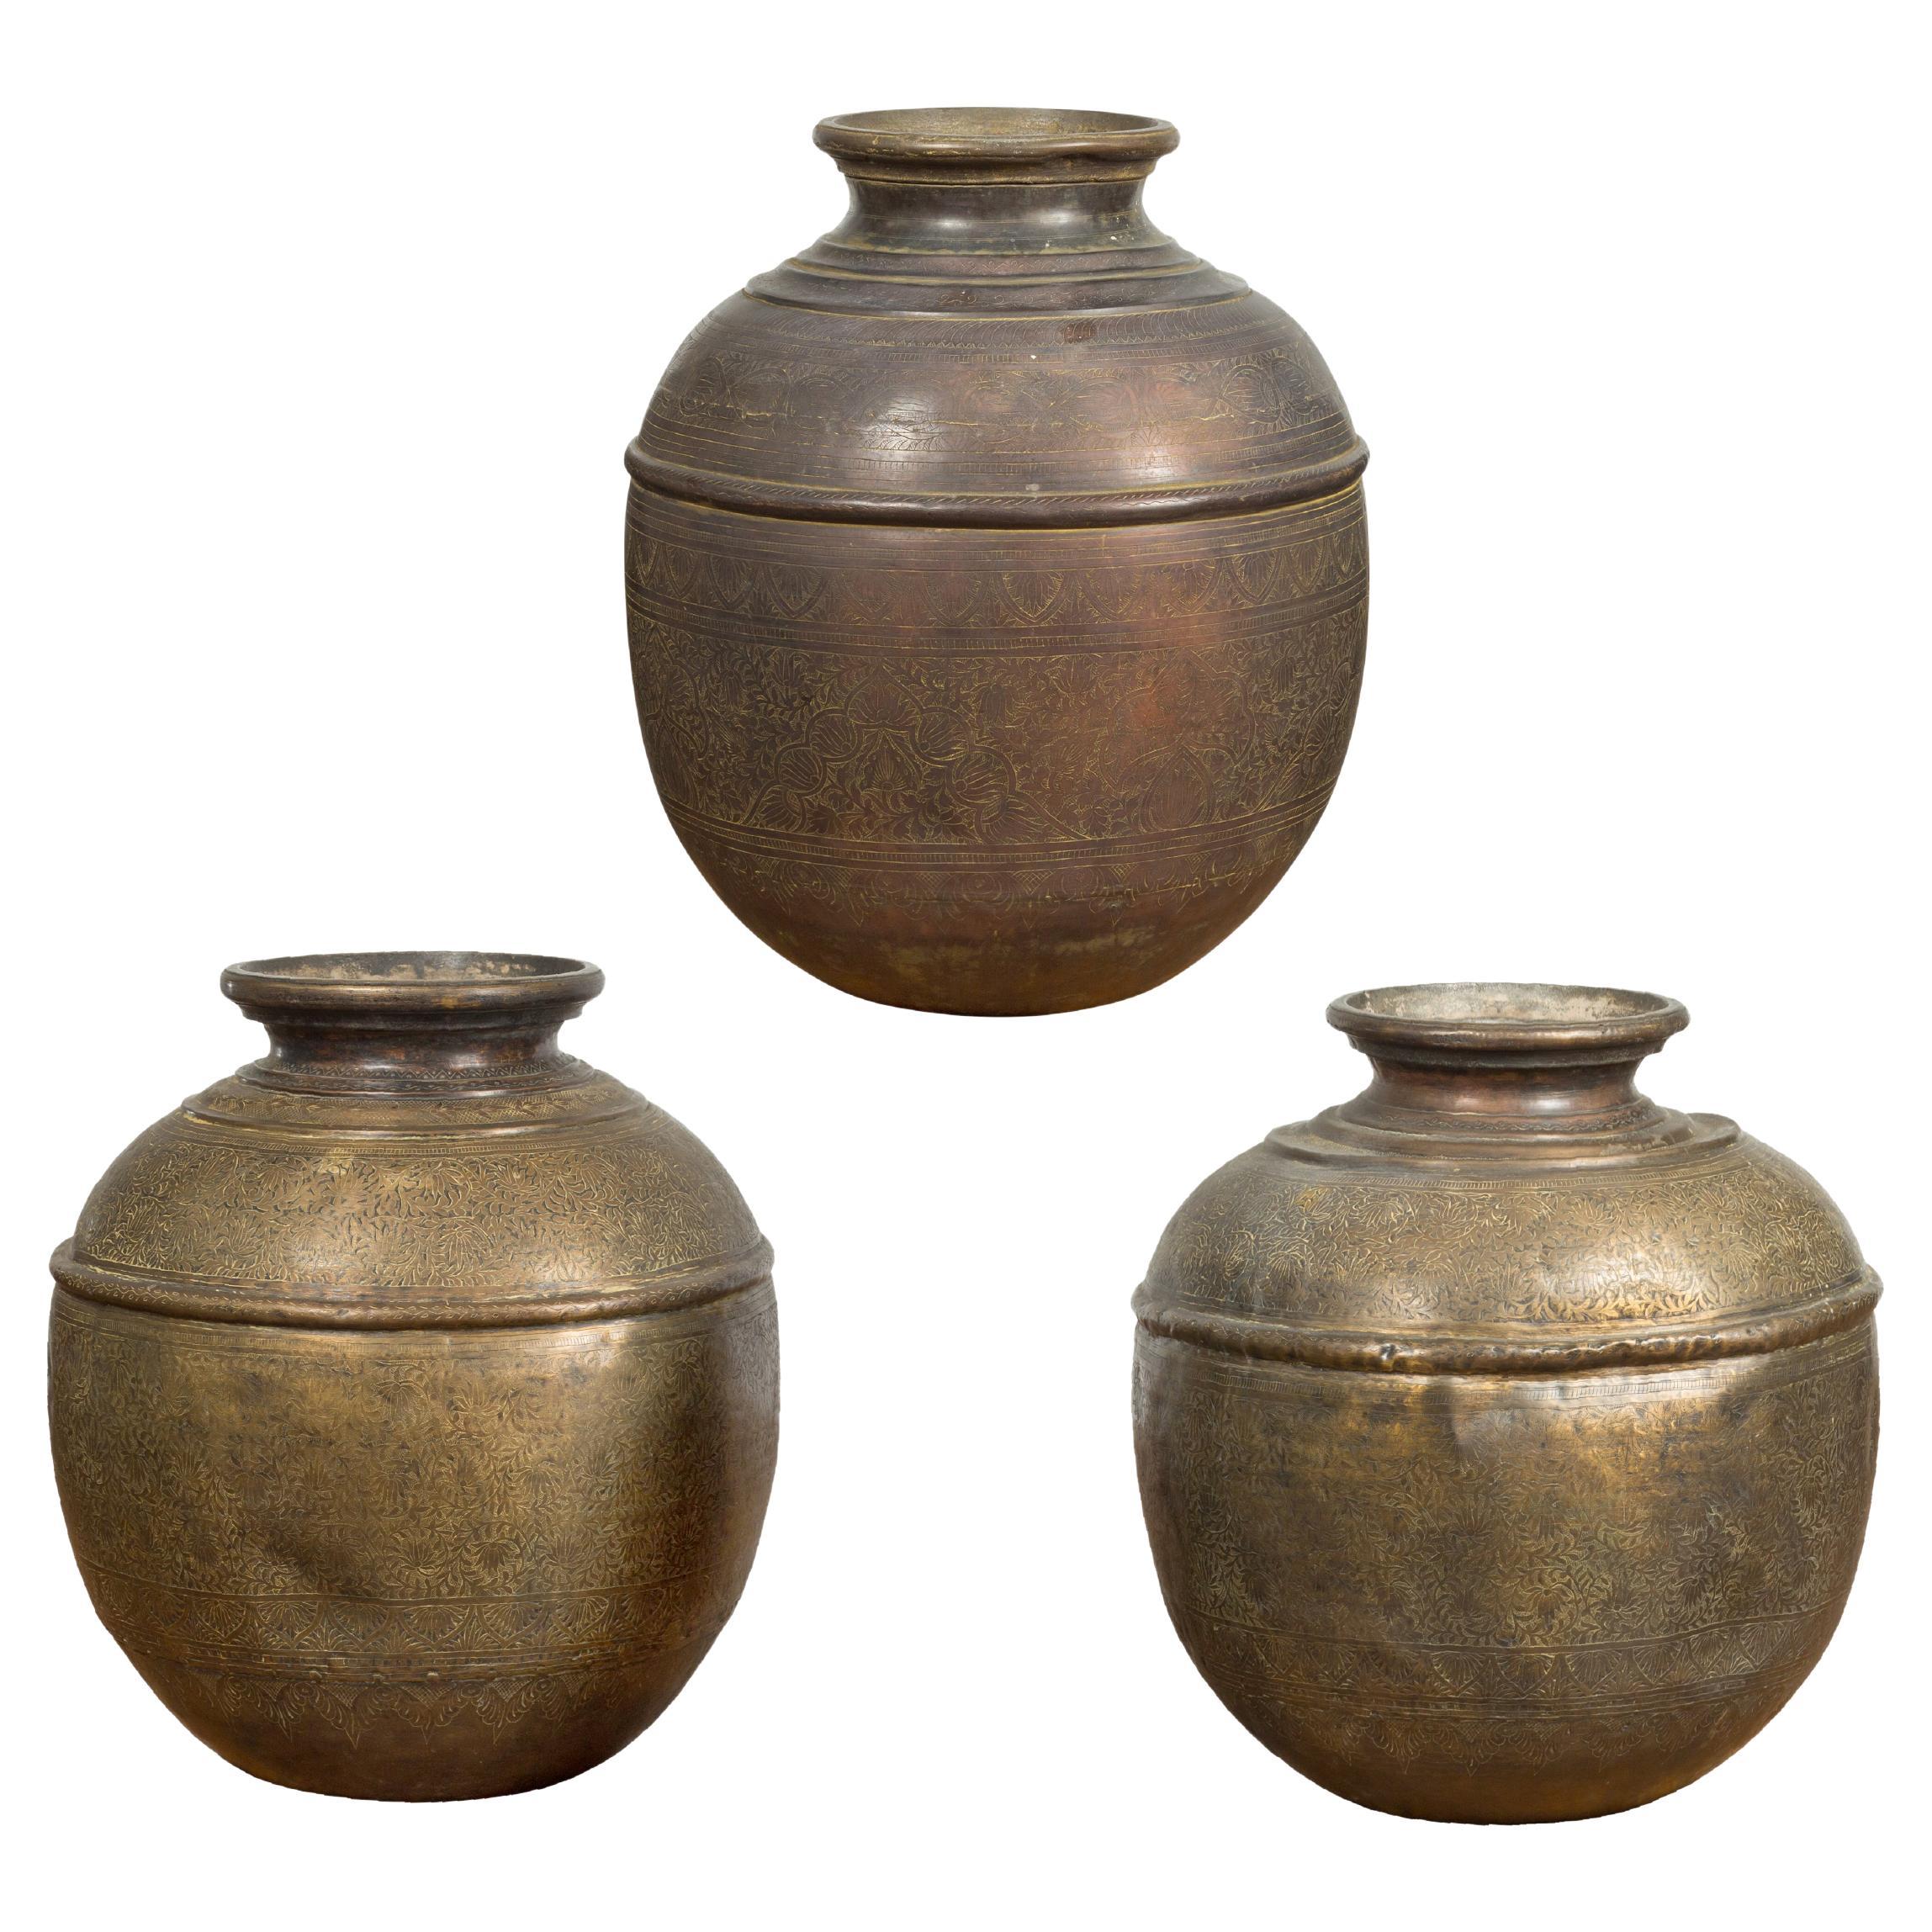 Antike indische Wassergefäße aus Messing des 19. Jahrhunderts mit Laubdekor, einzeln verkauft